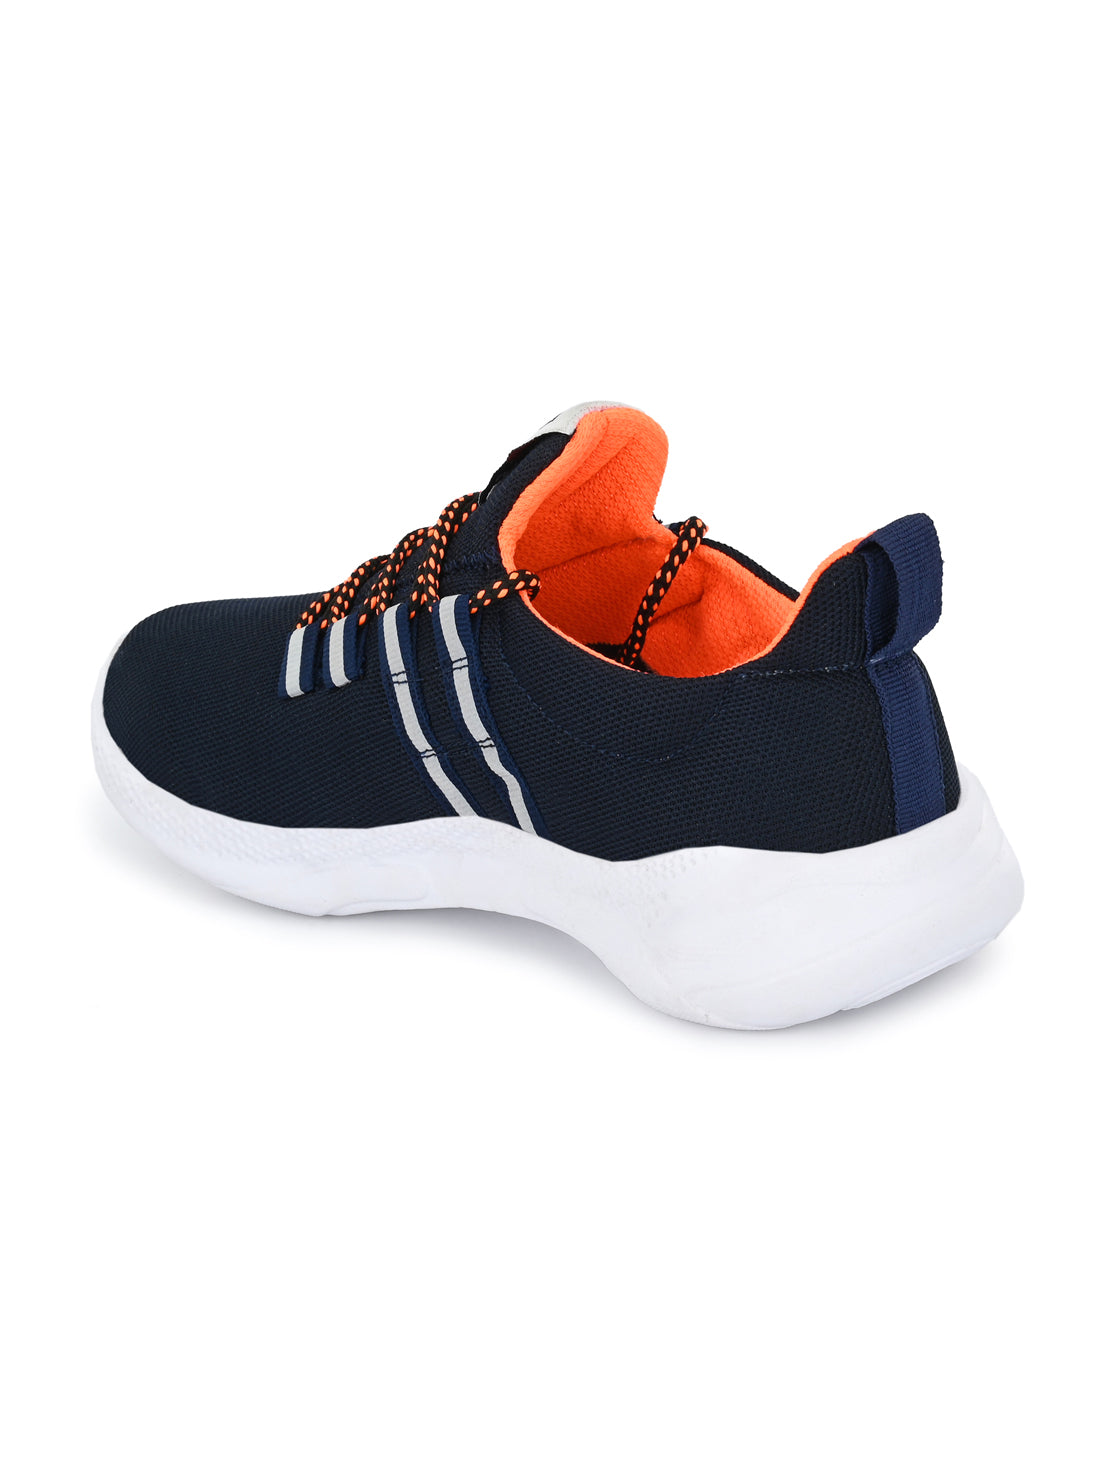 Hirolas® Men's Blue Mesh Running/Walking/Gym Lace Up Sport Shoes (HRL2023BLU)